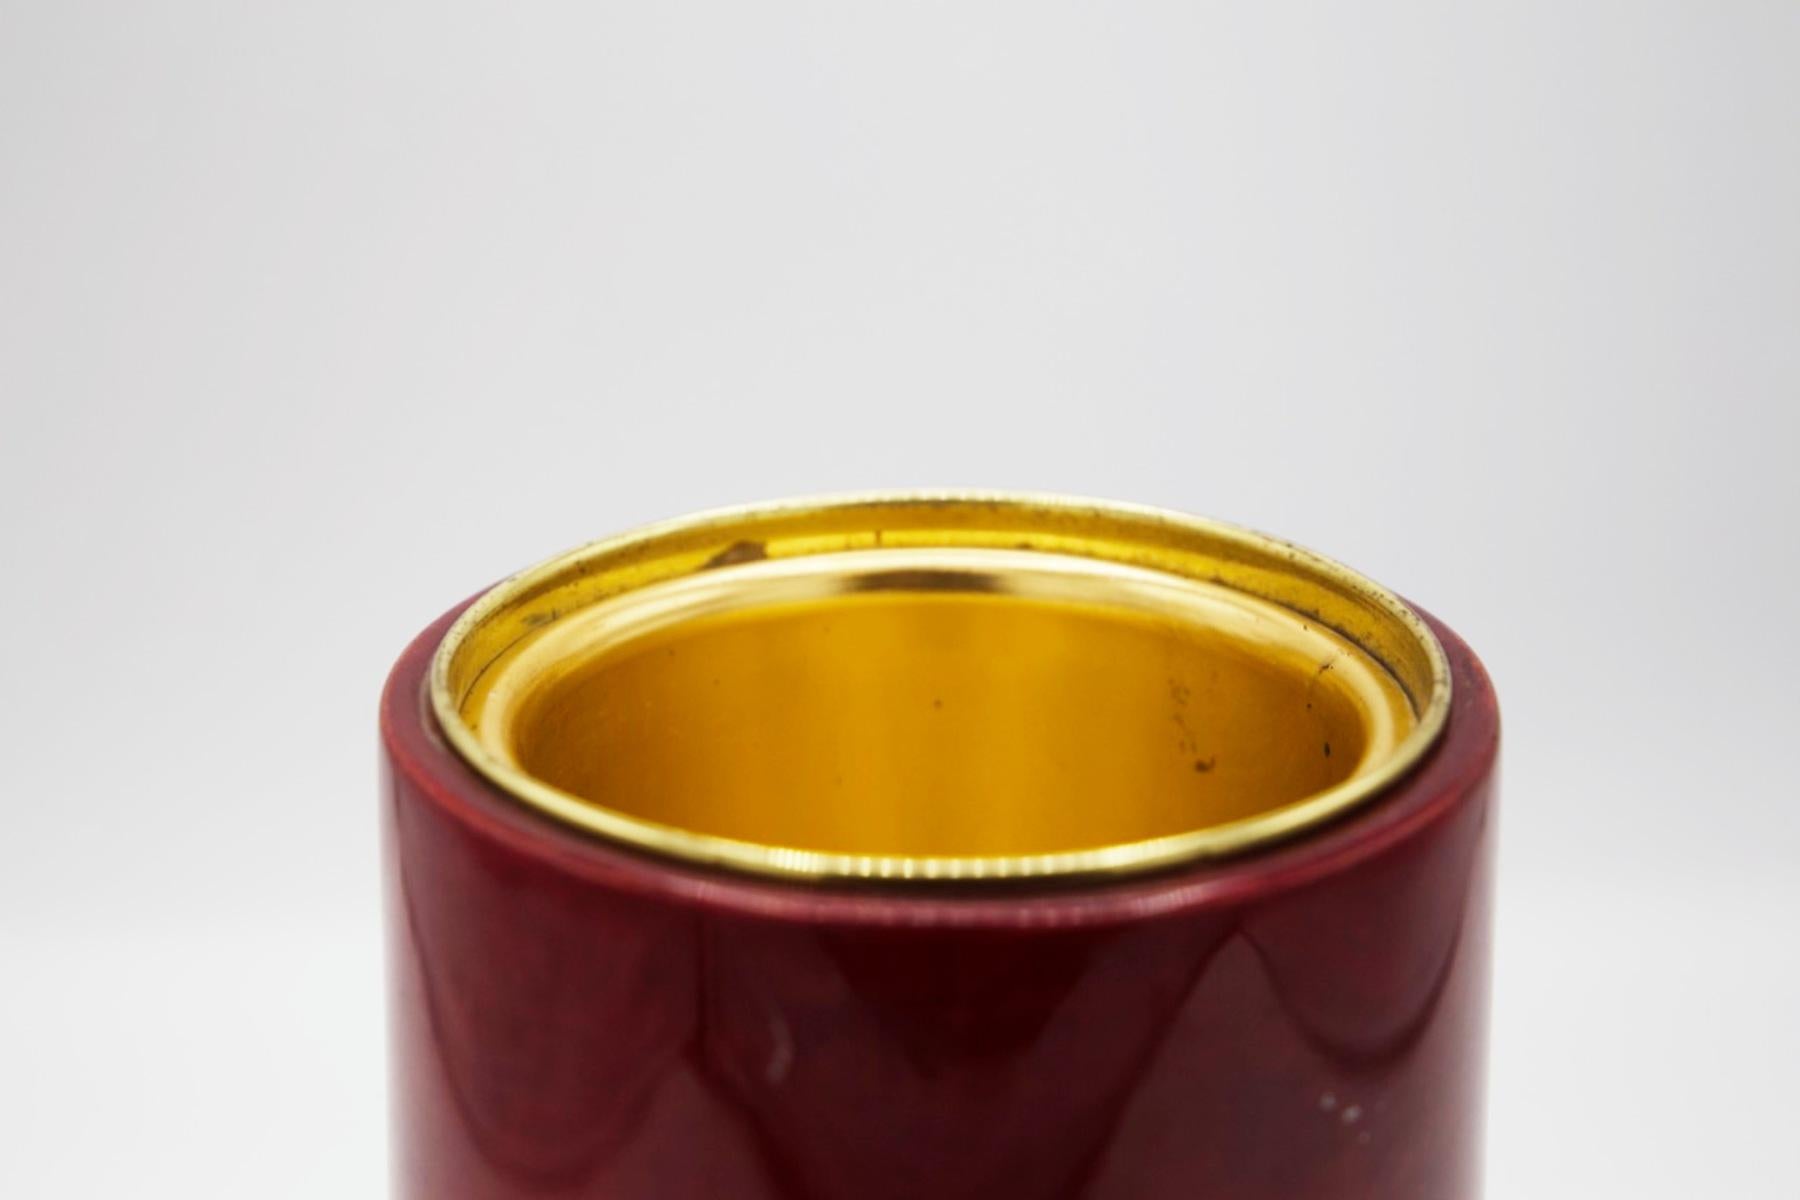 Schöner Getränke- und Eisbehälter von Giorgio Tura aus den 1950er Jahren.
Außen ganz aus rotem Pergament, mit breiterem zylindrischen Boden. Die Innenseite ist vergoldet und kann mit Eis gefüllt werden, damit die Getränke kalt bleiben!